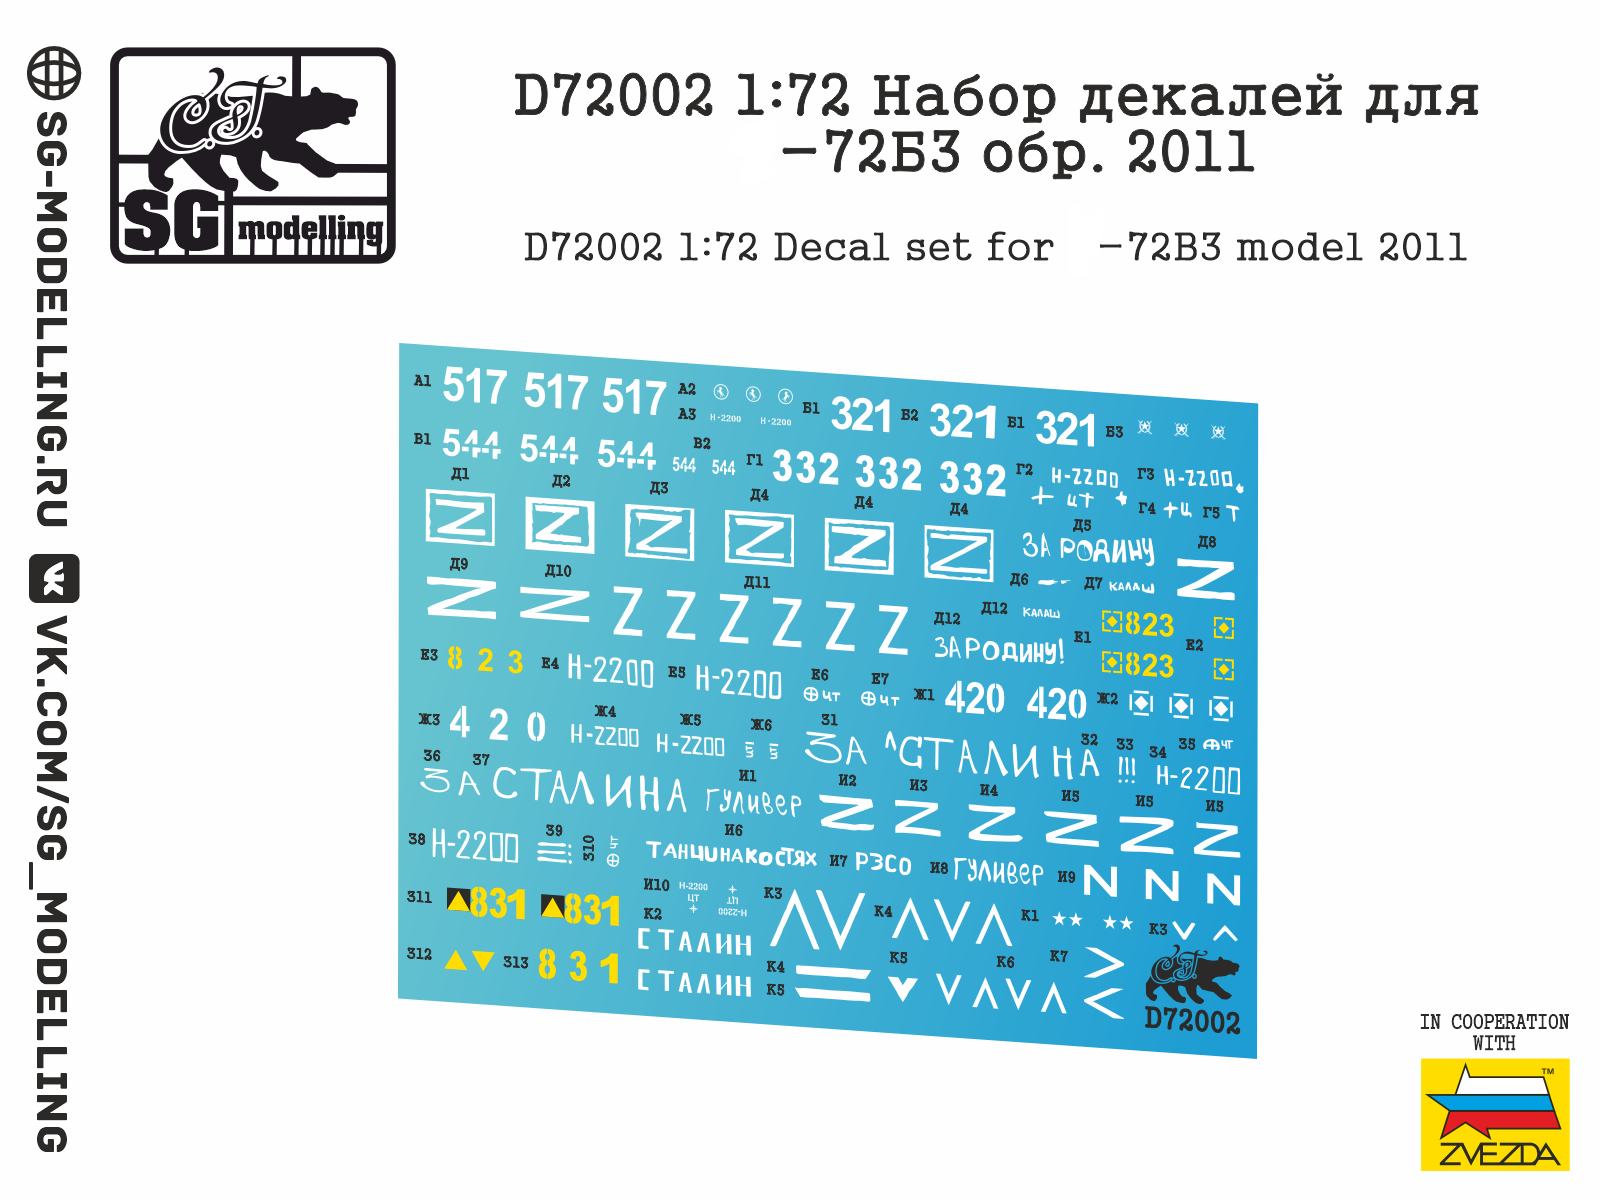 D72002  декали  Набор декалей для Танк-72Б3 обр. 2011  (1:72)